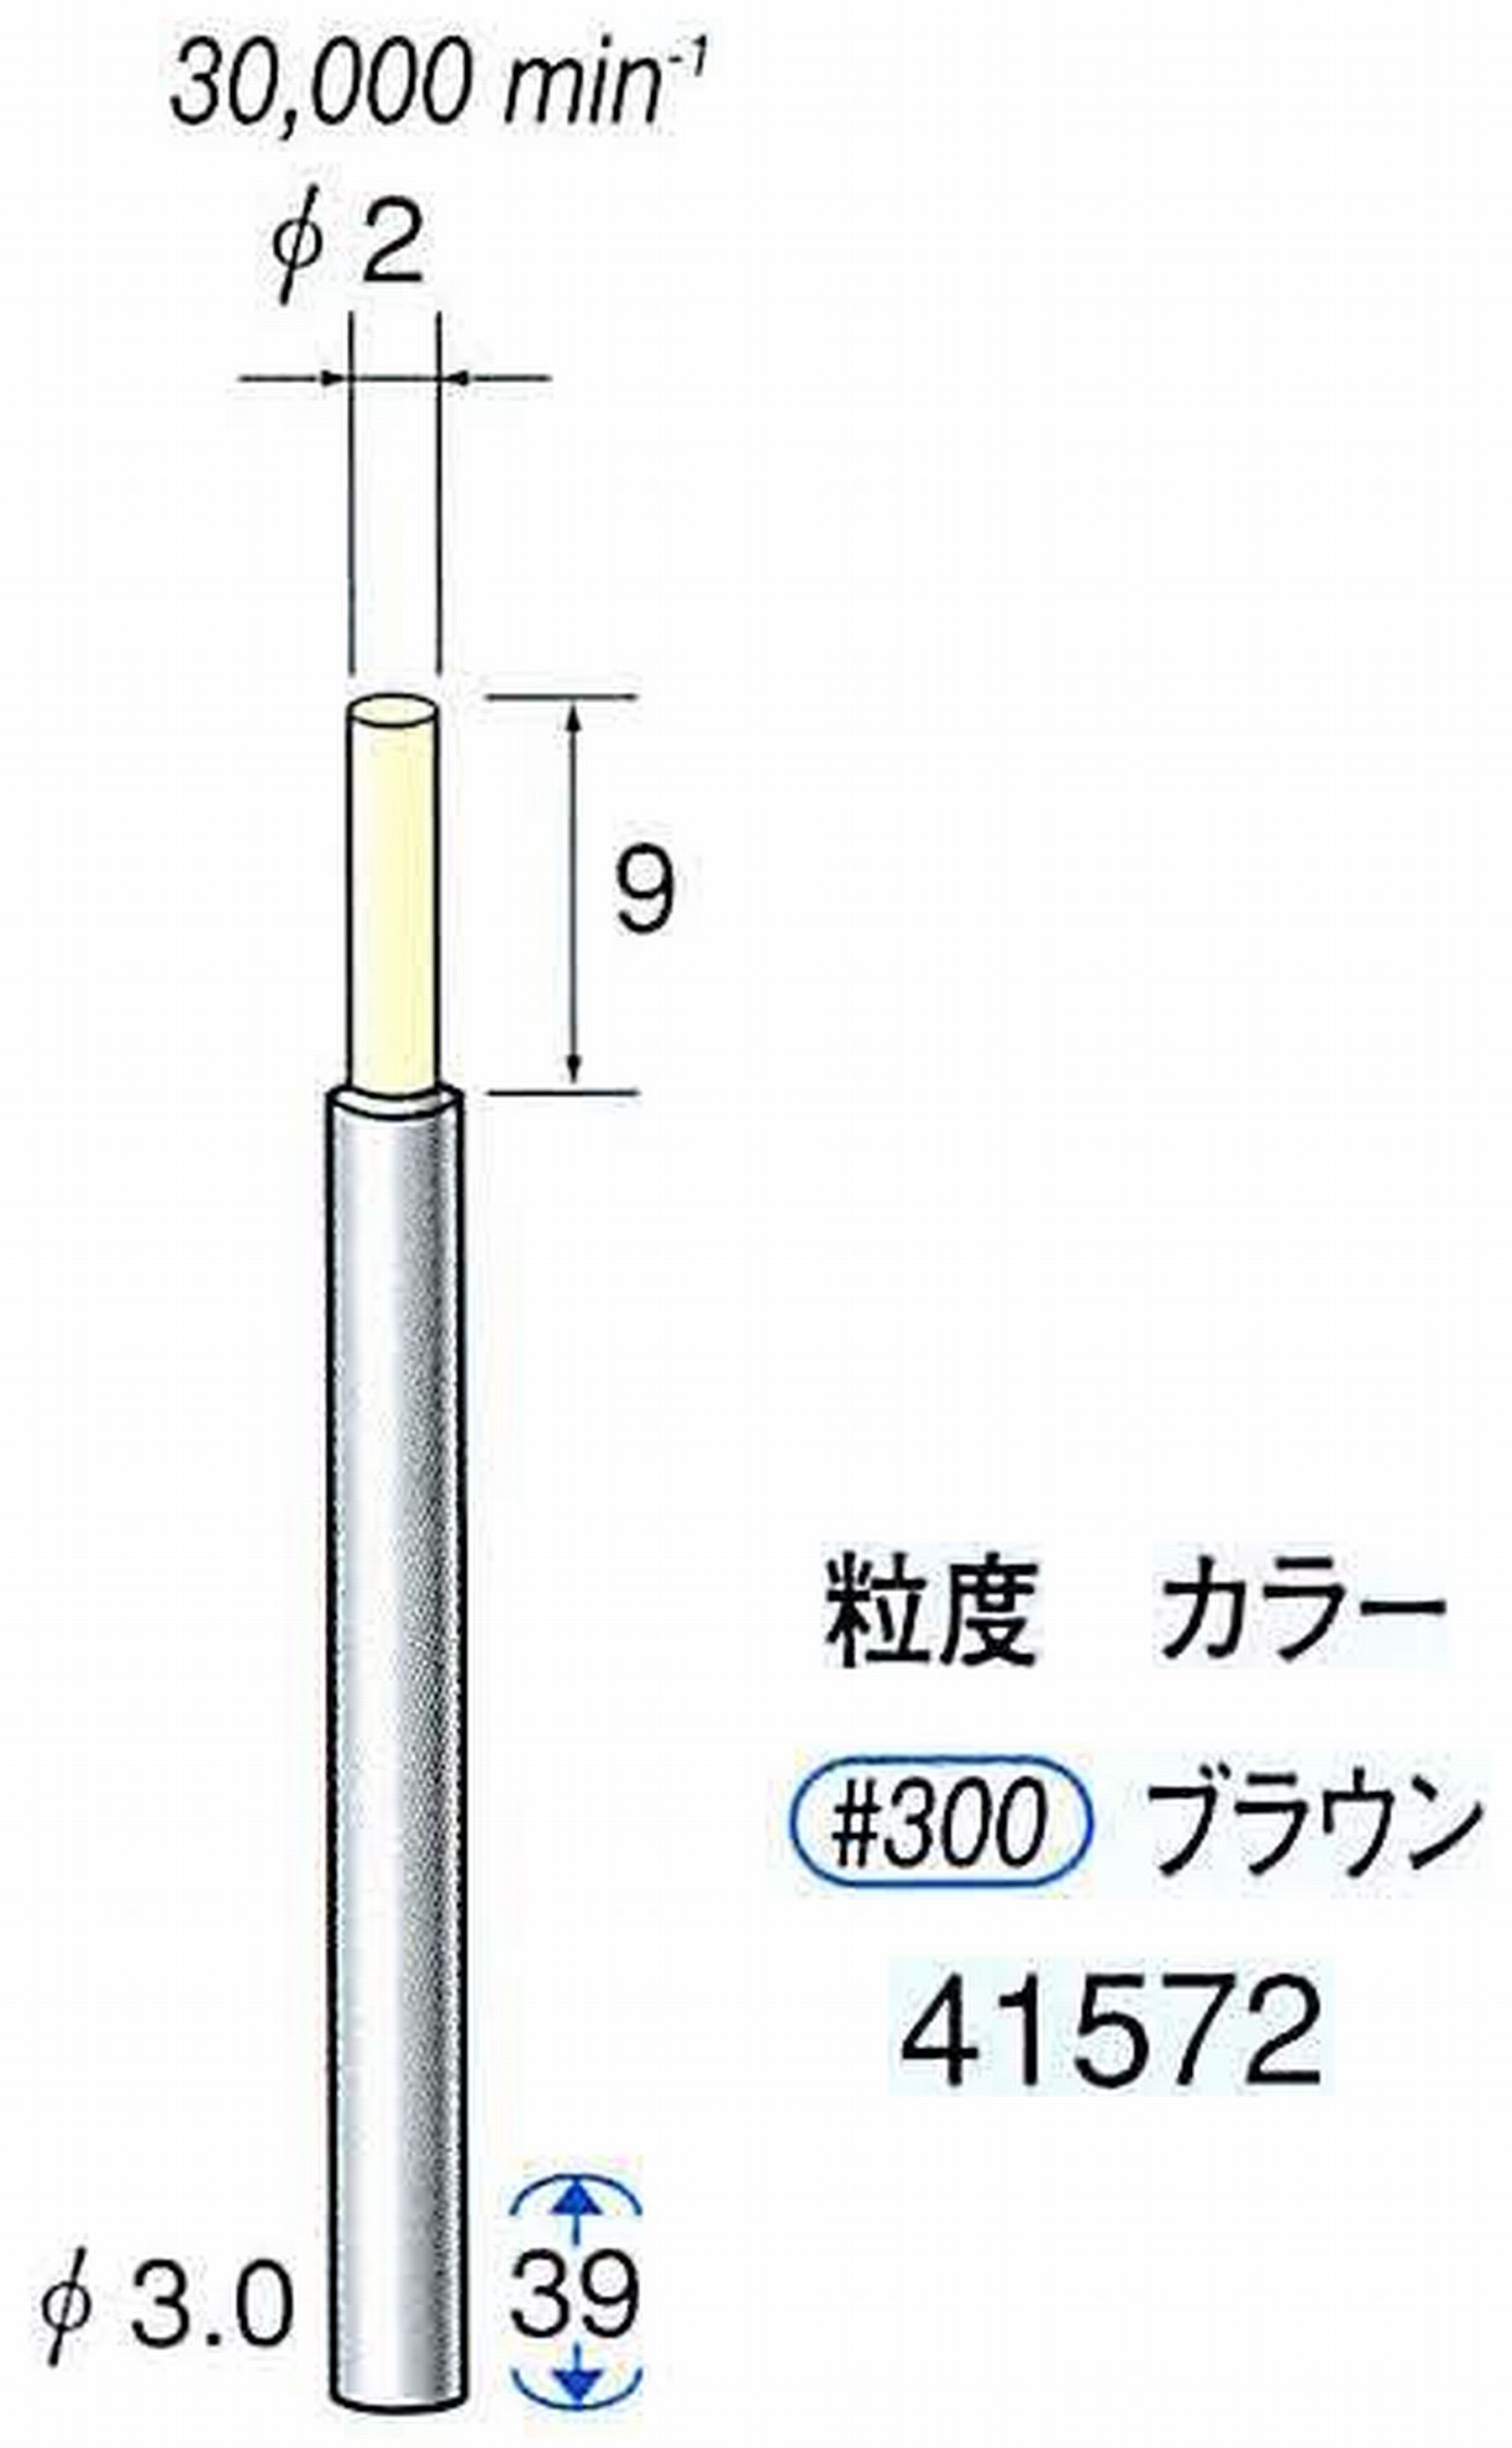 ナカニシ/NAKANISHI セラファイバー精密軸付砥石(カラー ブラウン) 軸径(シャンク) φ3.0mm 41572